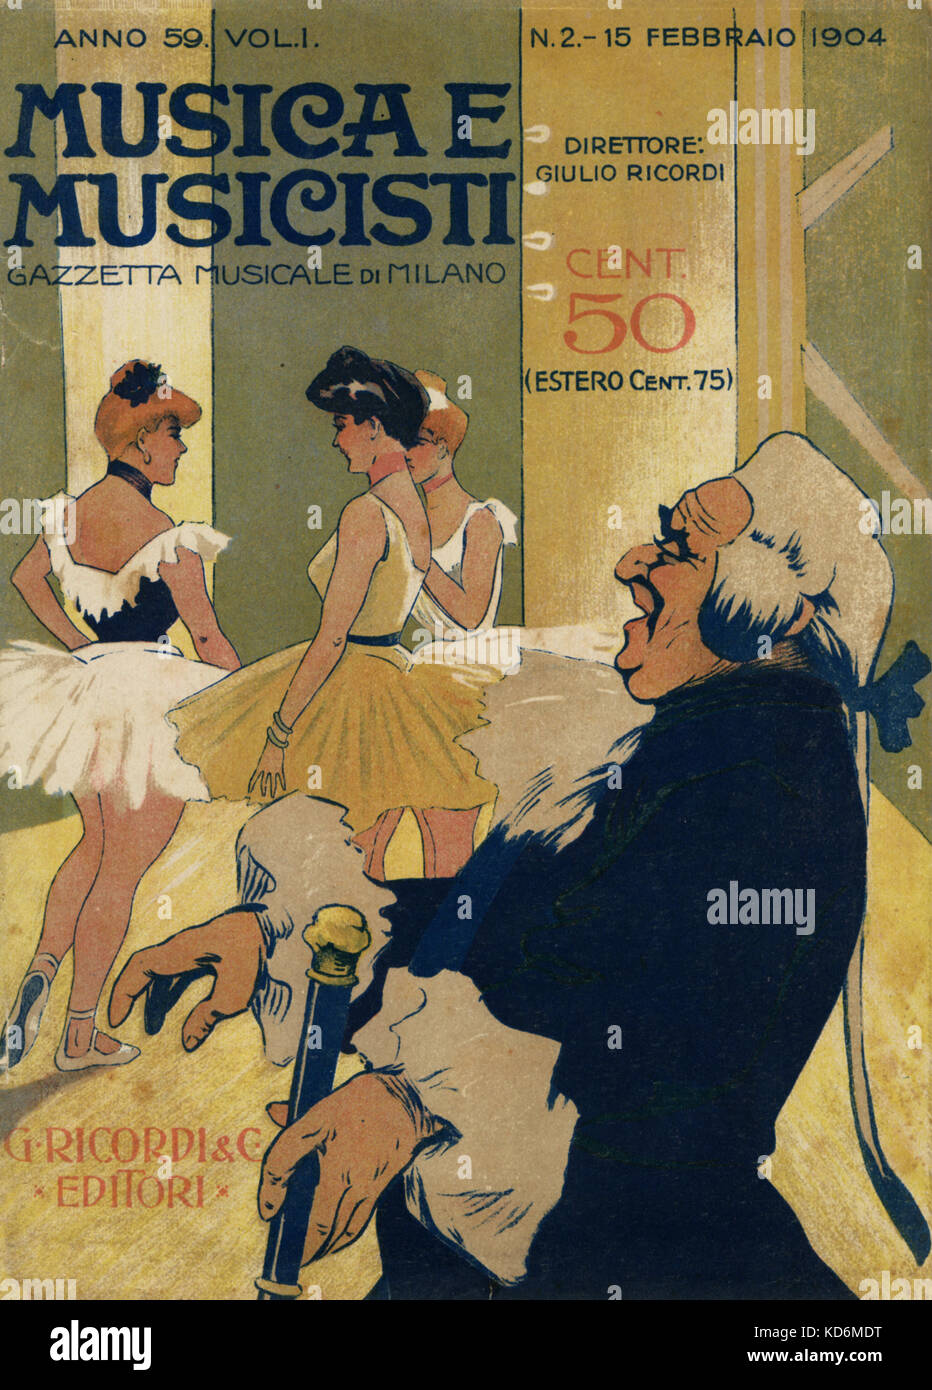 Musica e Musicisti" des 20. Jahrhunderts italienische Musik Magazin,, die musikalische Zeitung von Mailand, mit drei Ballerinas in typischen 1900er Stil, mit Ballet Master. Stockfoto